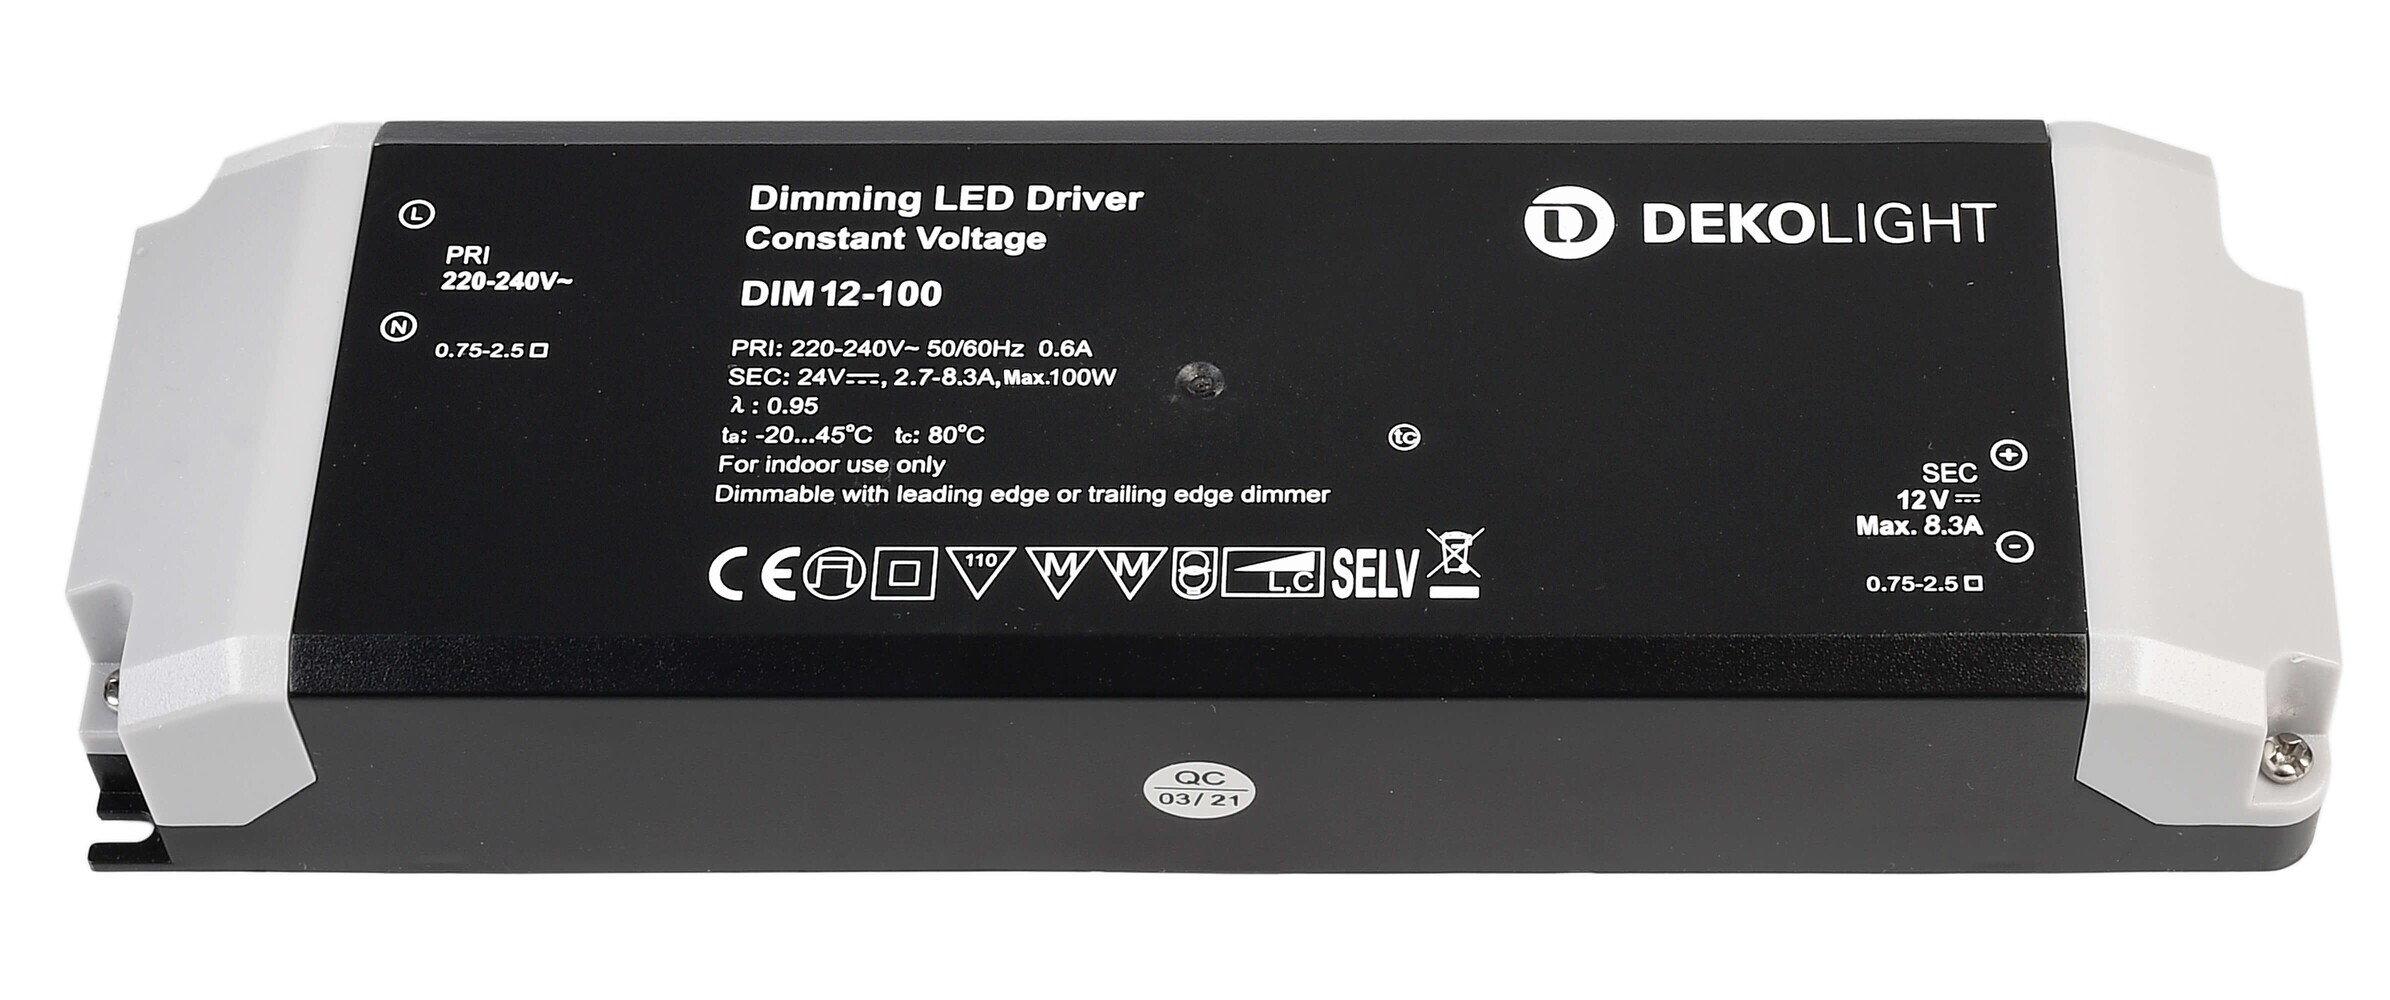 Hochwertiges LED Netzteil der Marke Deko-Light für eine konstante Spannung